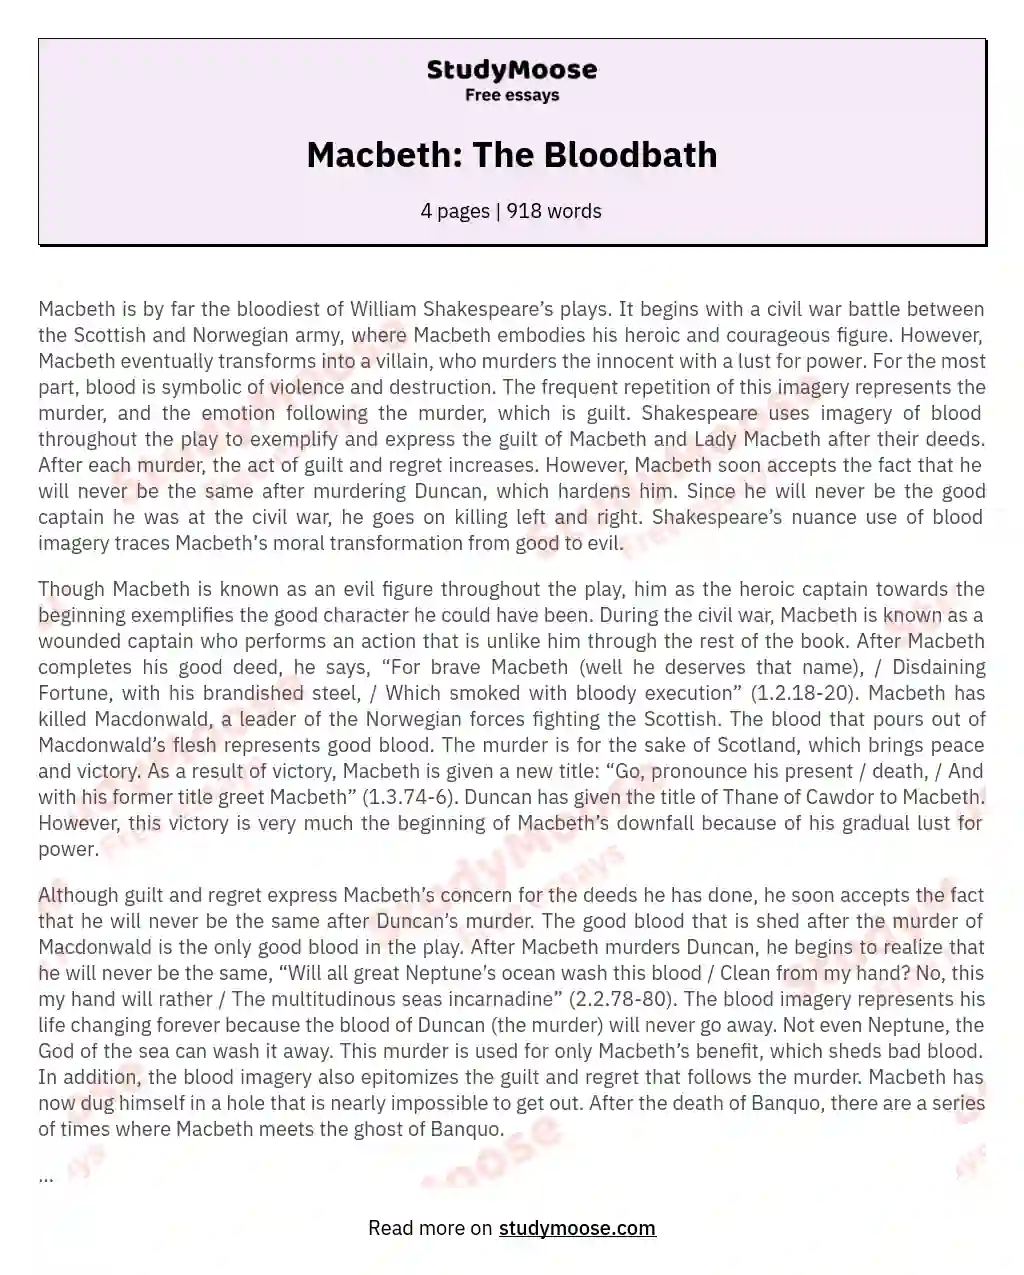 Macbeth: The Bloodbath